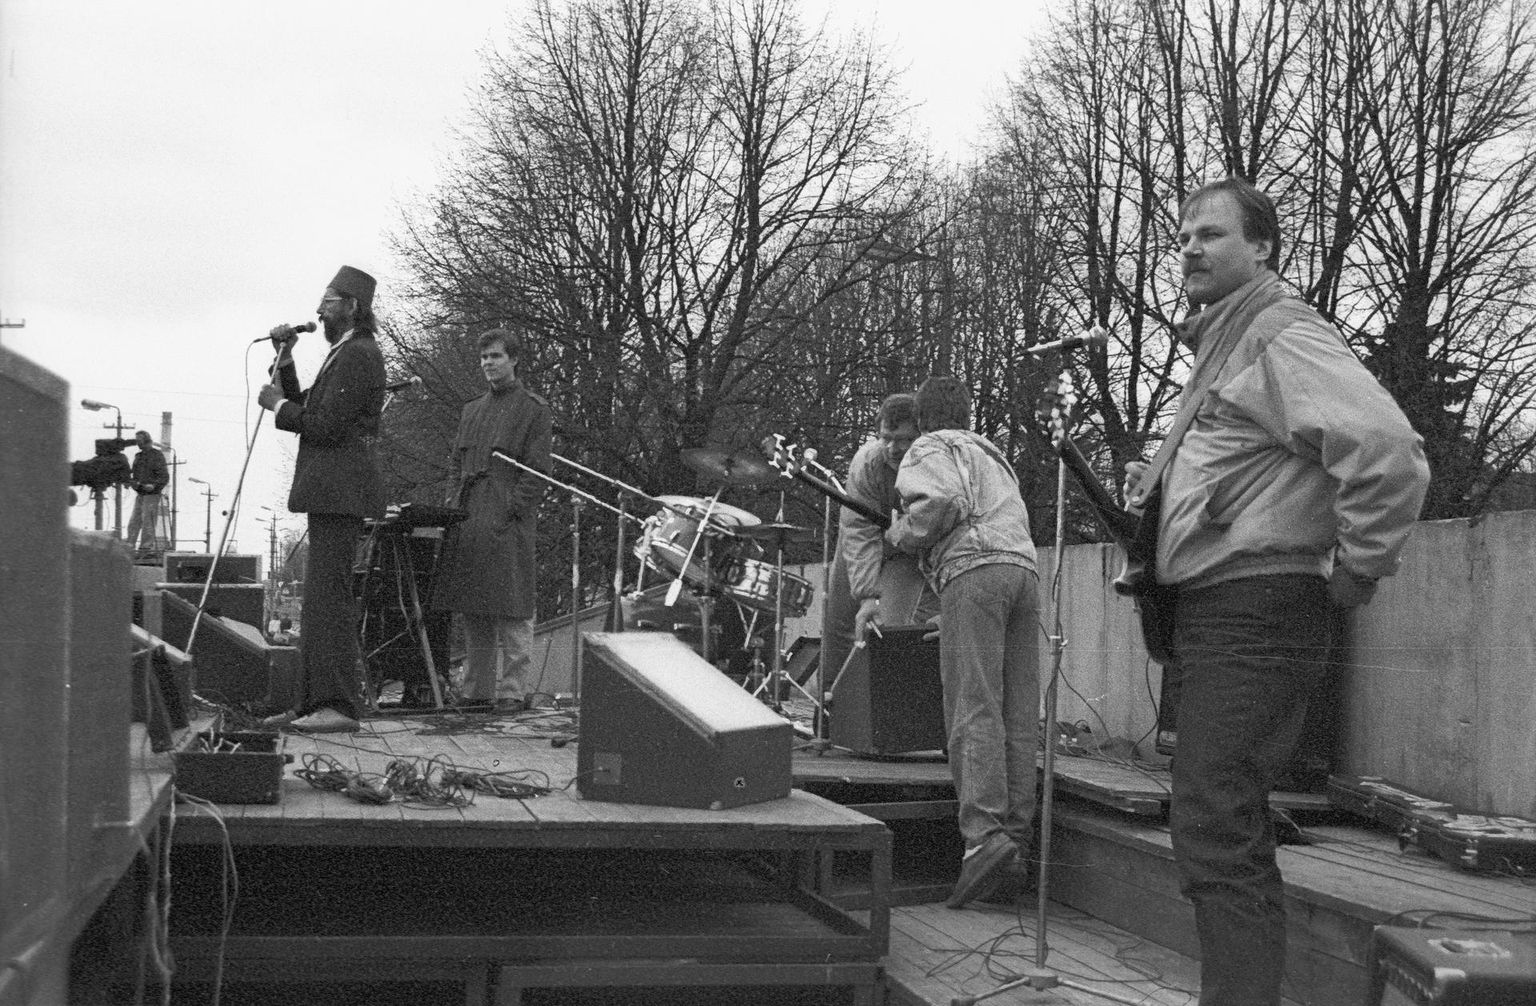 Rosta Aknad pidas mais 1992 Tartu kesklinnas tribüünil Eesti Orjandusliku Partei teist kongressi. Pildil on Riho Gross (paremalt, kitarr), Peeter Jaska (bass), Ove Maidla (trummid), Erik Sakkov (klahvpillid) ja Peeter Volkonski (vokaal).